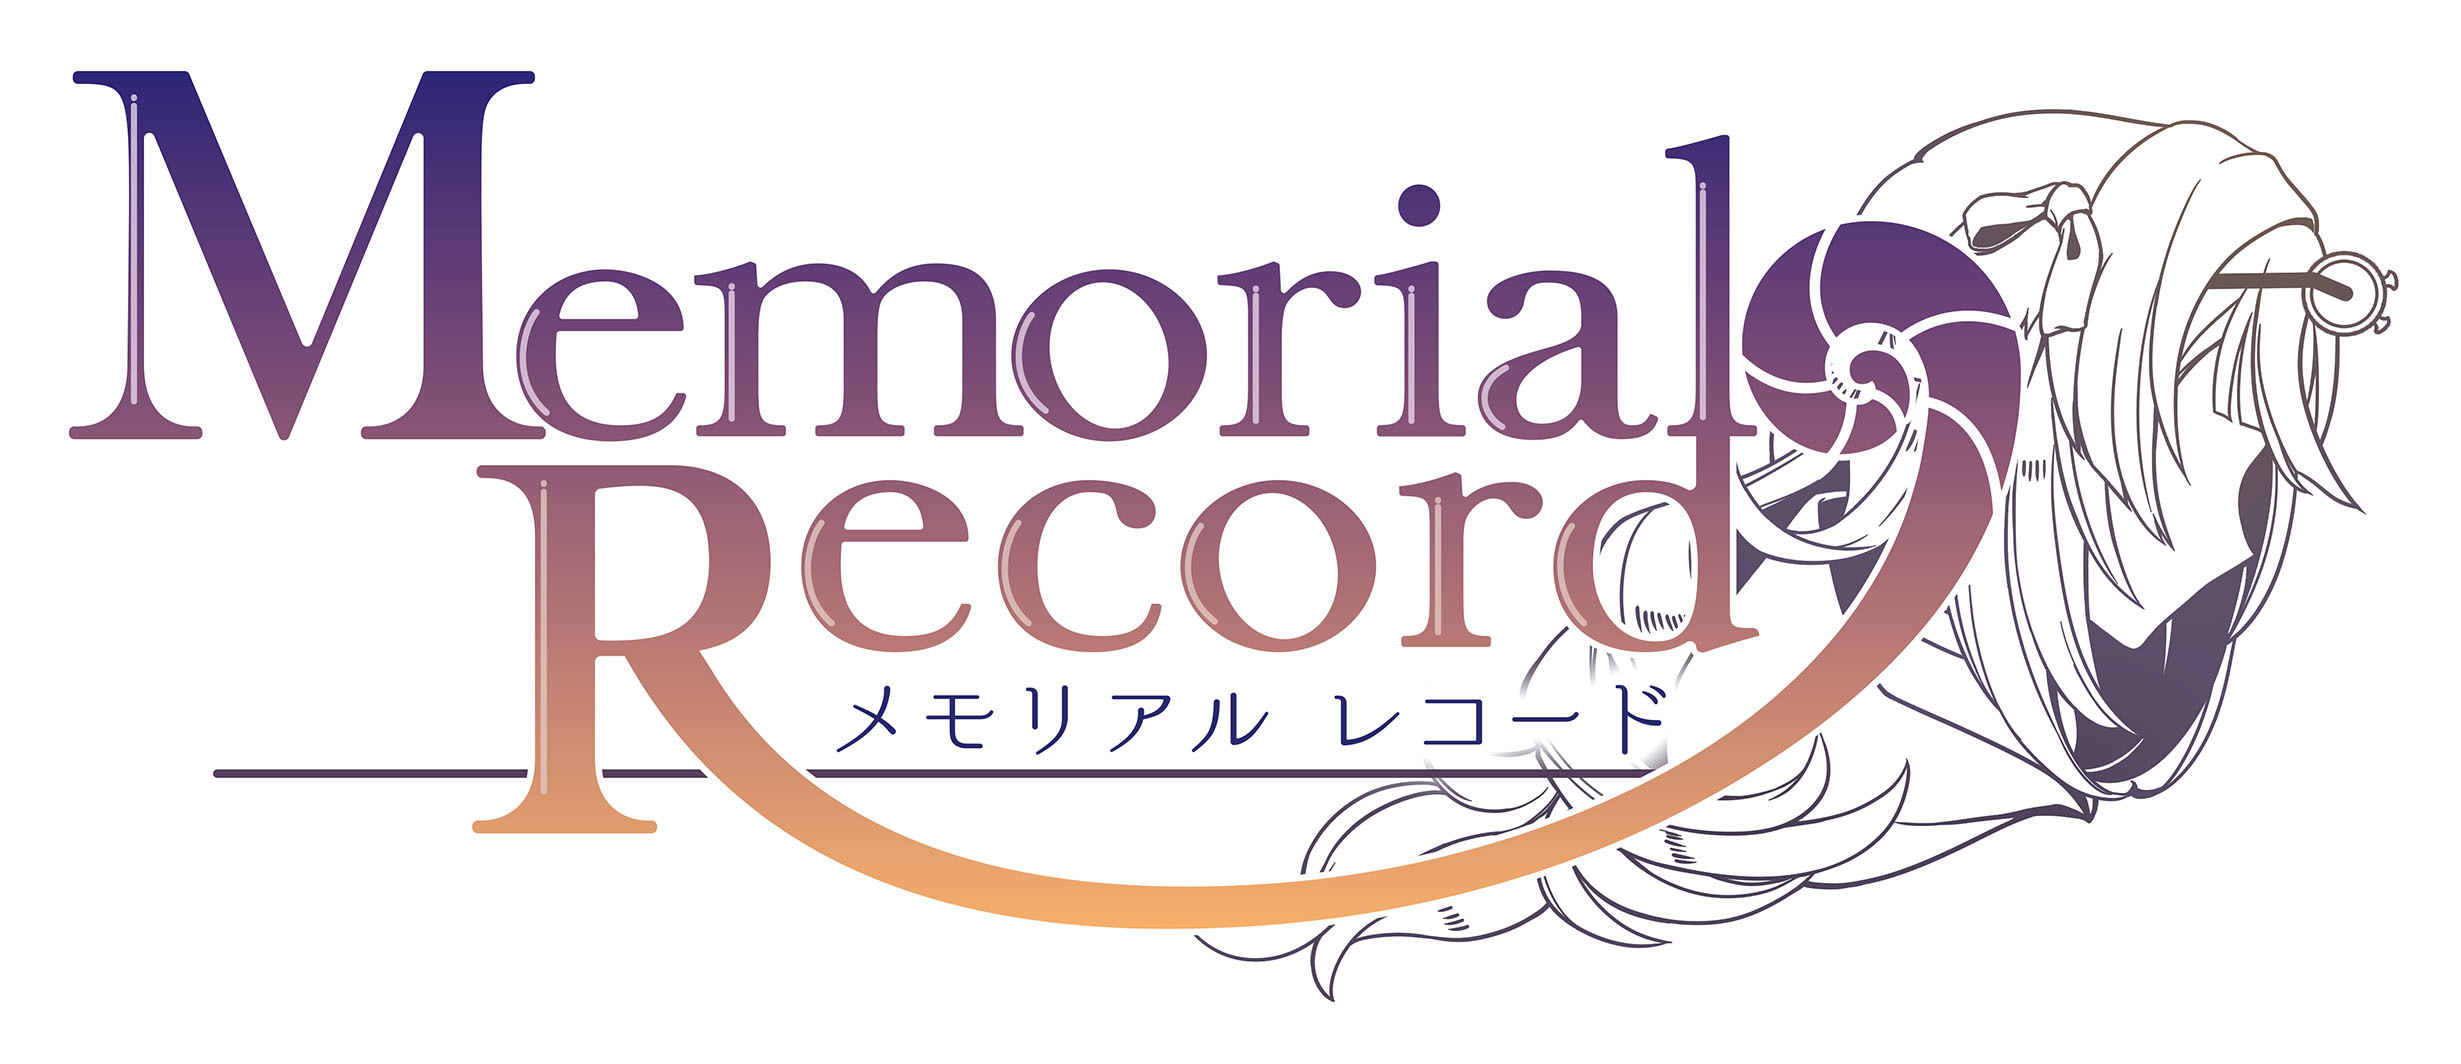 『メモリアルレコード(Memorial Record)』
12月13日(金)より期間限定イベント
「ファントムナイト・クリスマス」を開催！